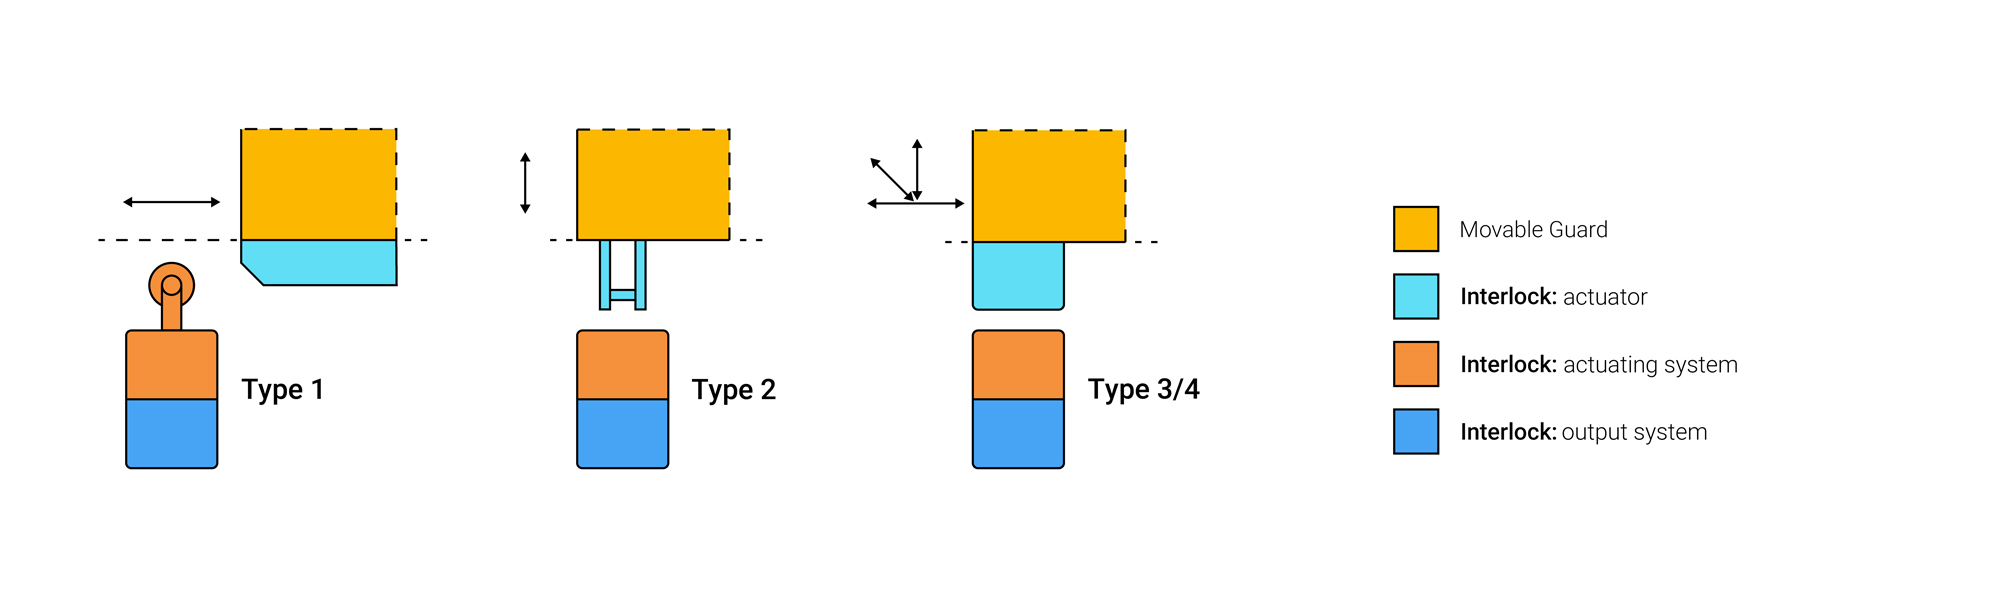 Schéma résumé des types de Dispositifs d'Interverrouillage (Type 1, Type 2, Type 3, Type 4)